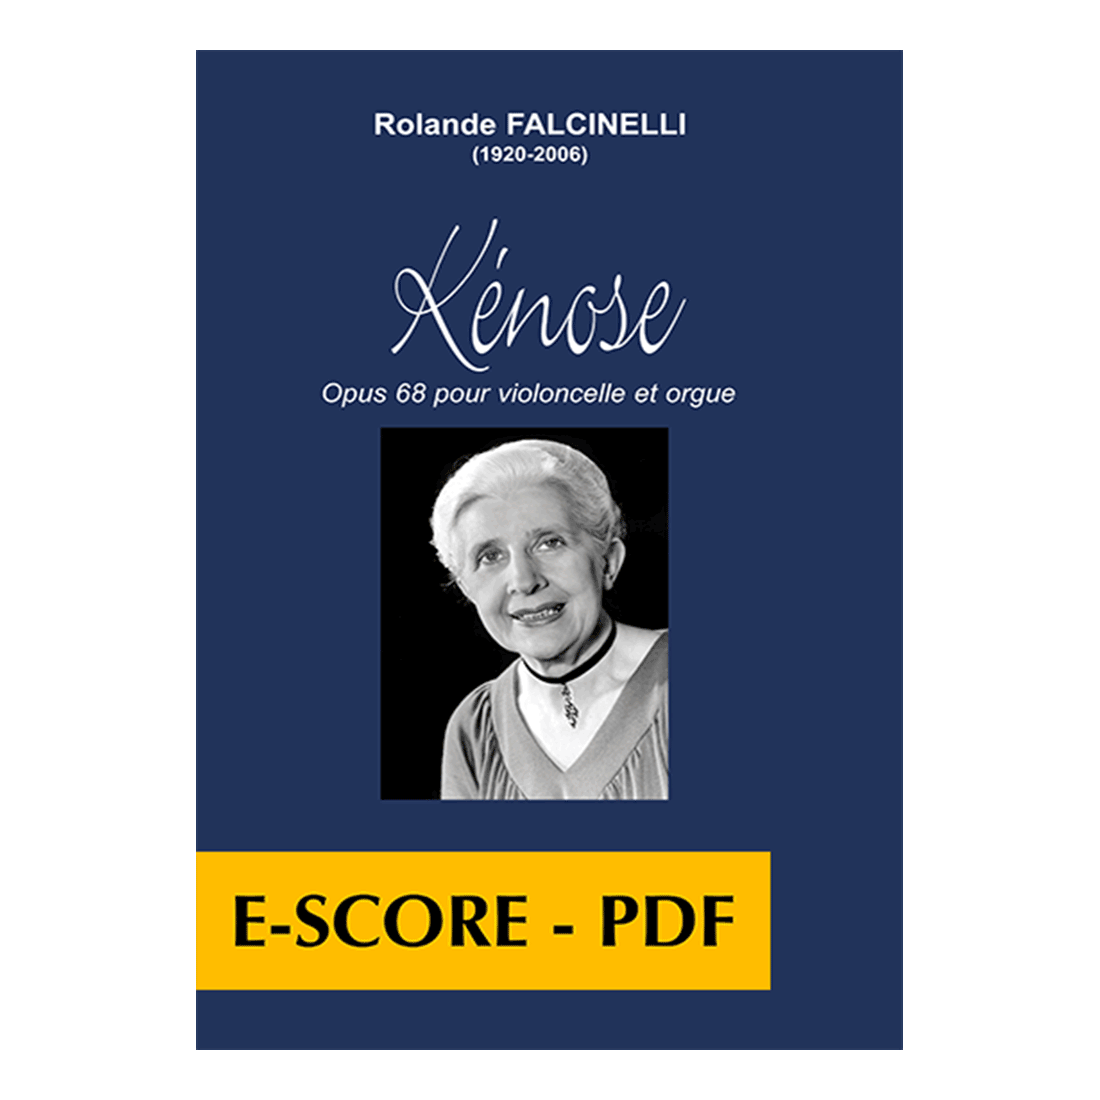 Kénose for cello and organ - E-score PDF